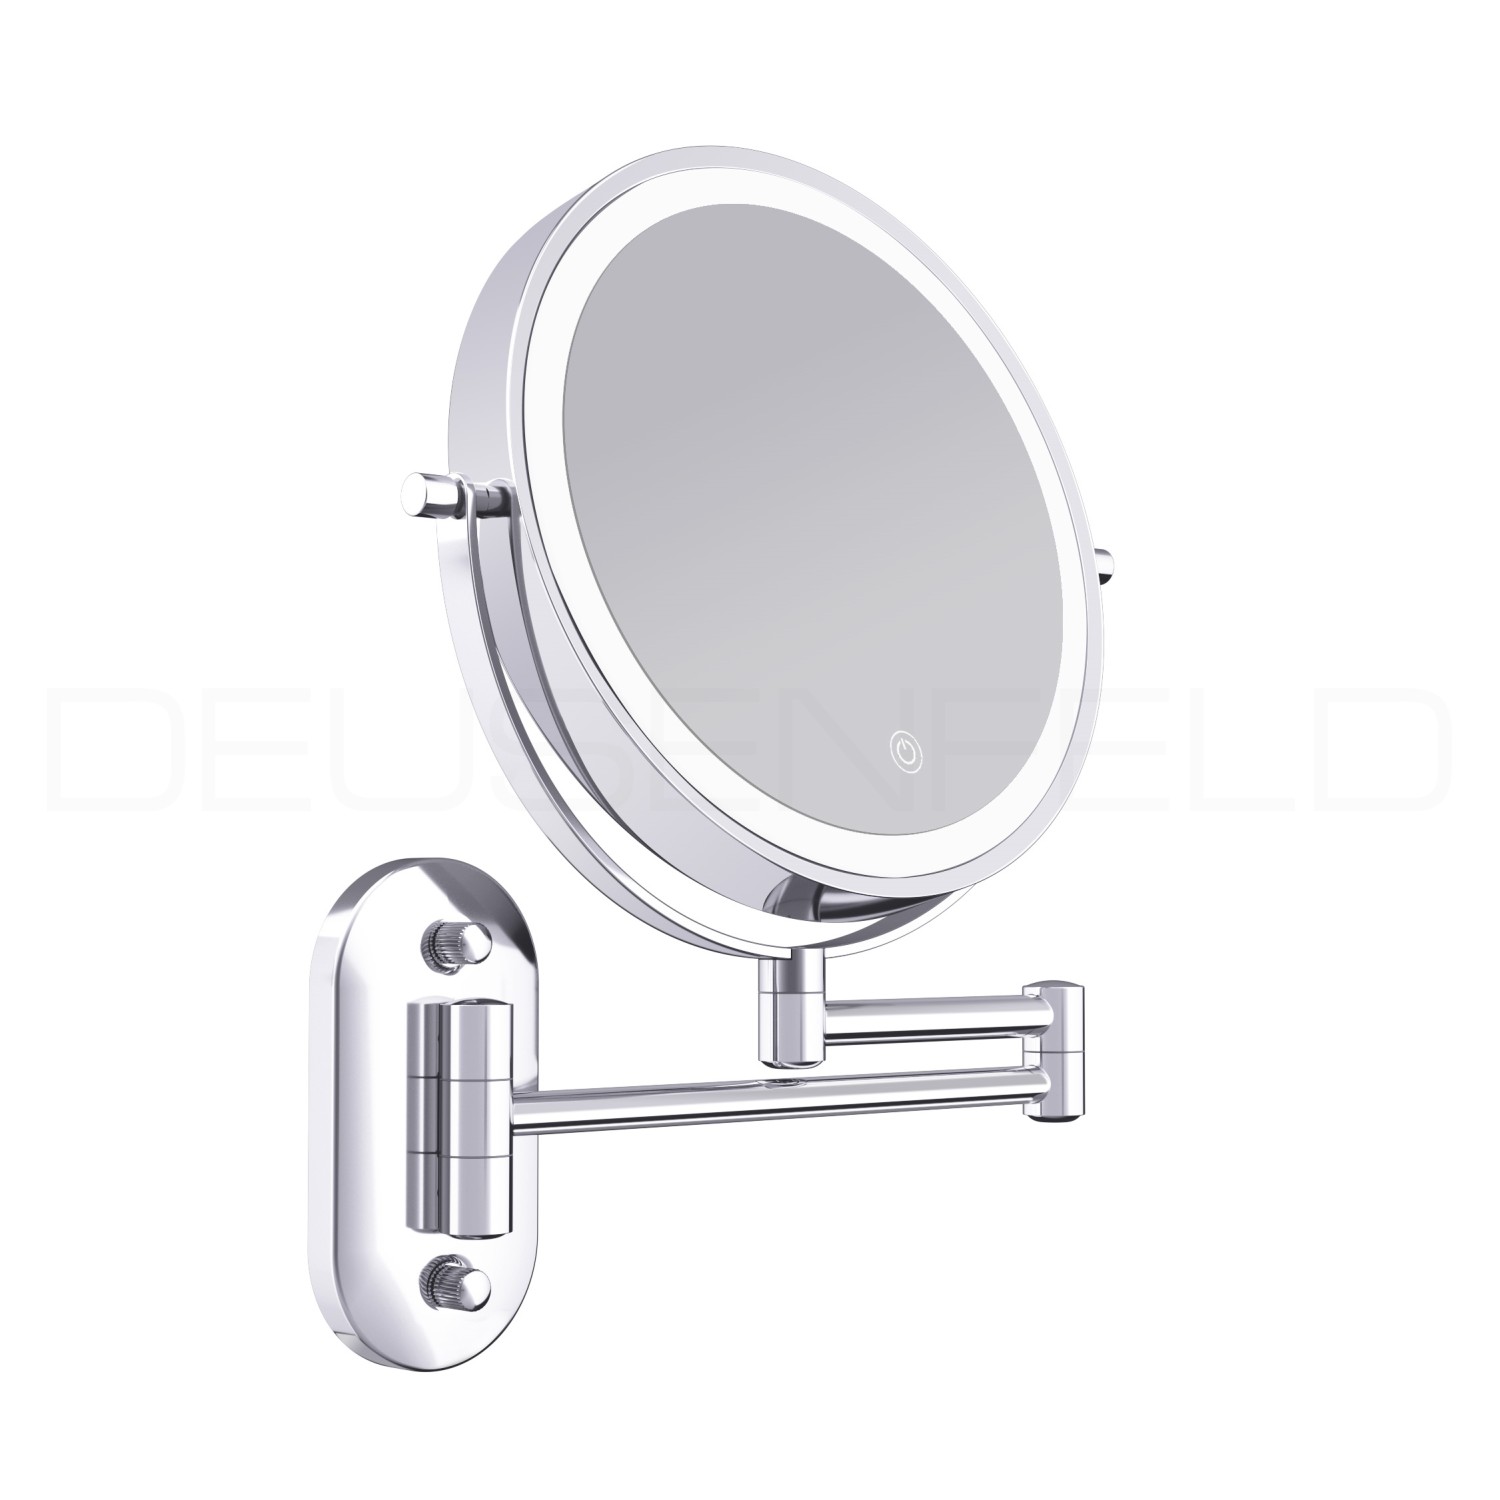 Mimigo Wand montiert Make-up Spiegel, 1x 3x Vergrößerung 360 Grad Rotation  doppelseitige Led beleuchtet Eitelkeit Spiegel für Badezimmer Batterie  betrieben